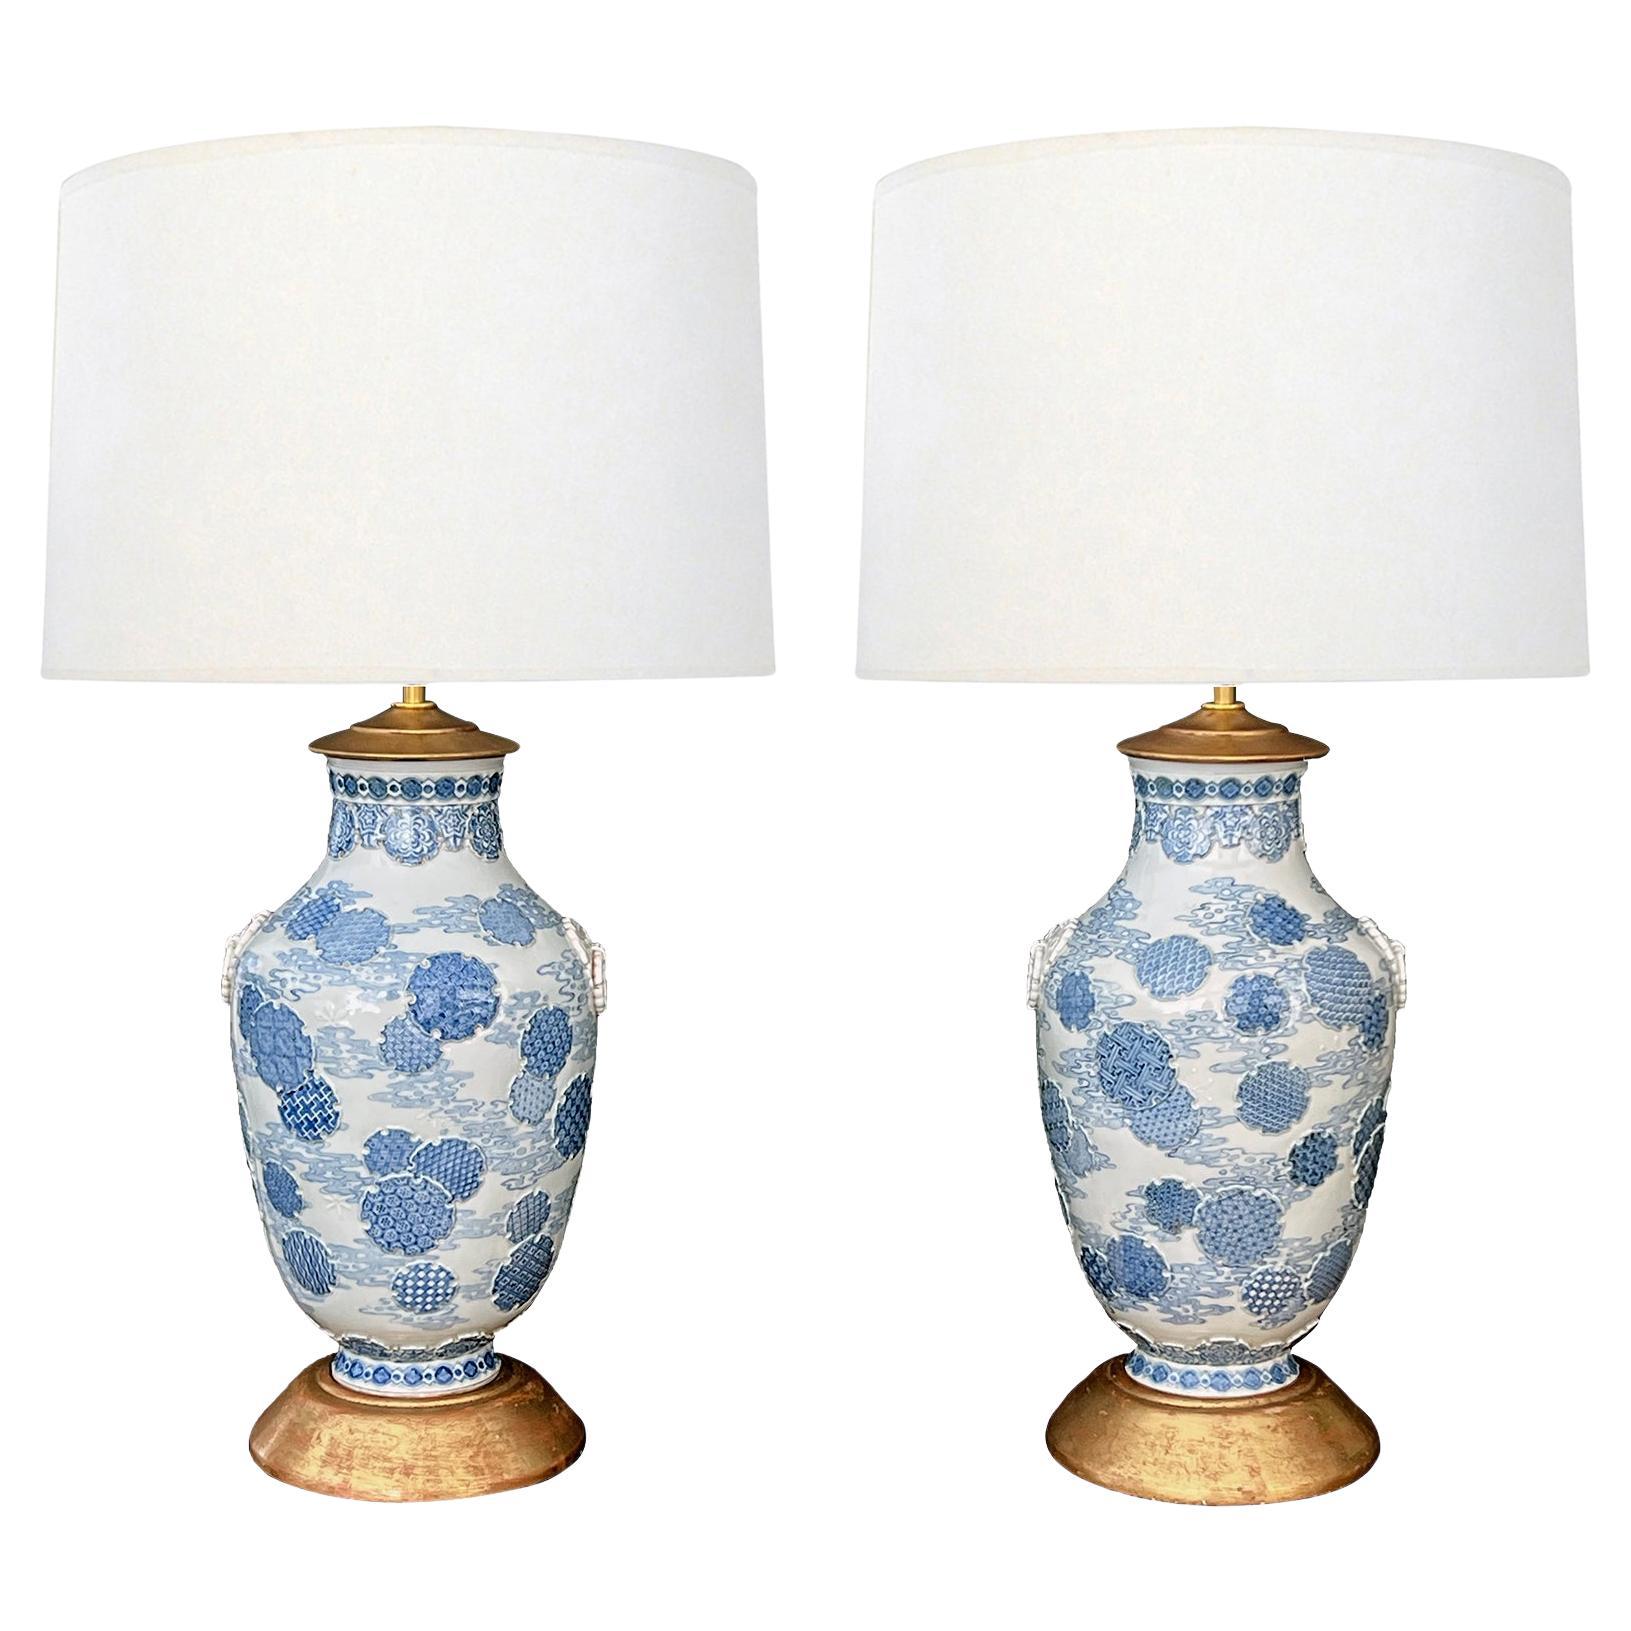 Importante paire de vases bleus et blancs japonais de la période Meiji maintenant montés comme lampes